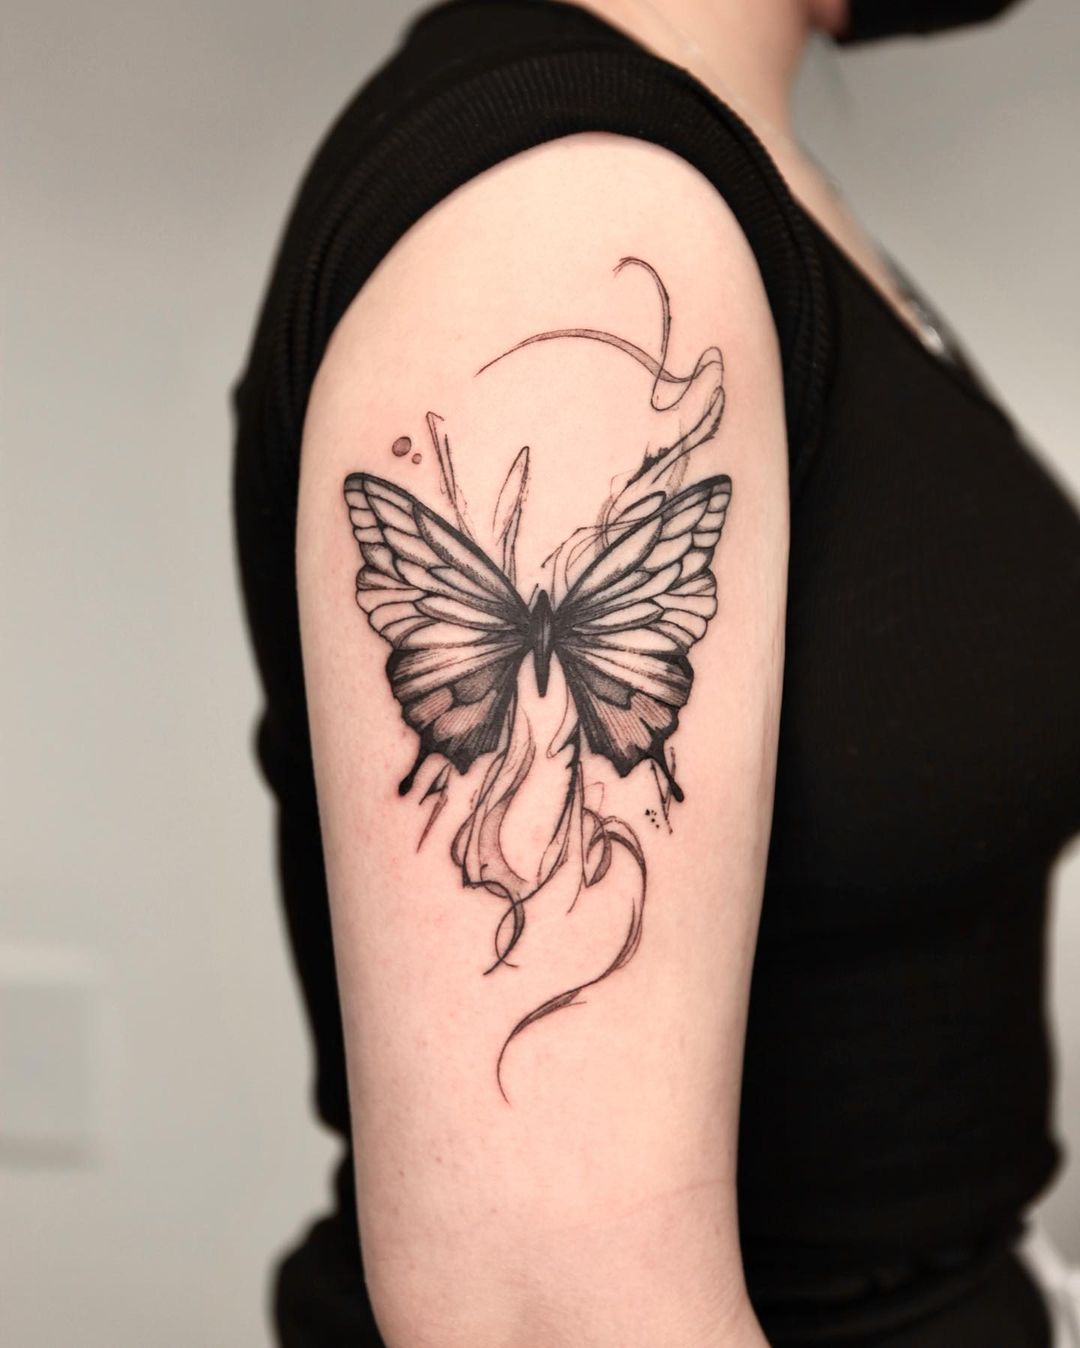 Значение татуировки с изображением бабочки